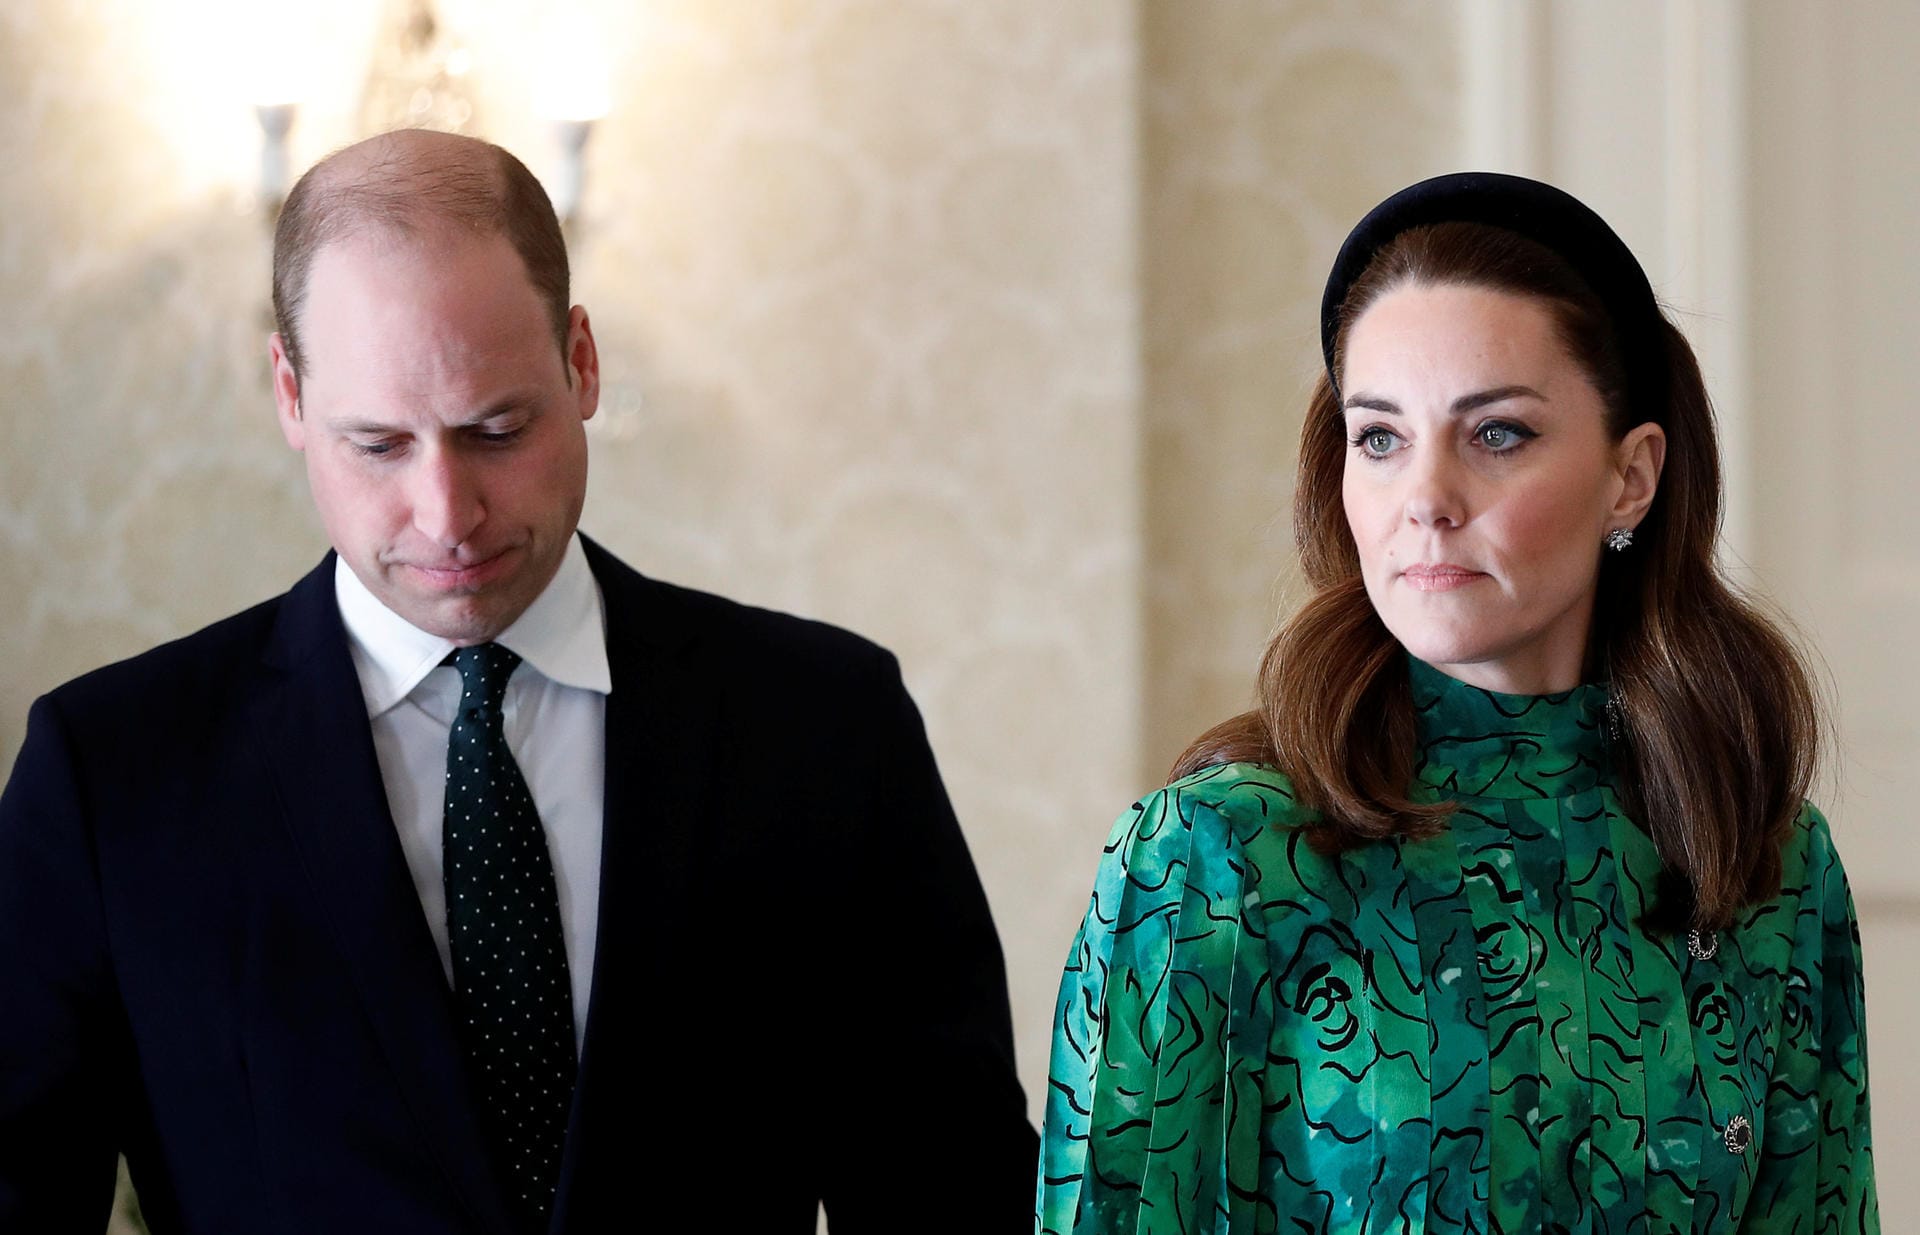 Herzogin Kate wählte ein elegantes grünes Kleid, William eine gepunktete Krawatte.